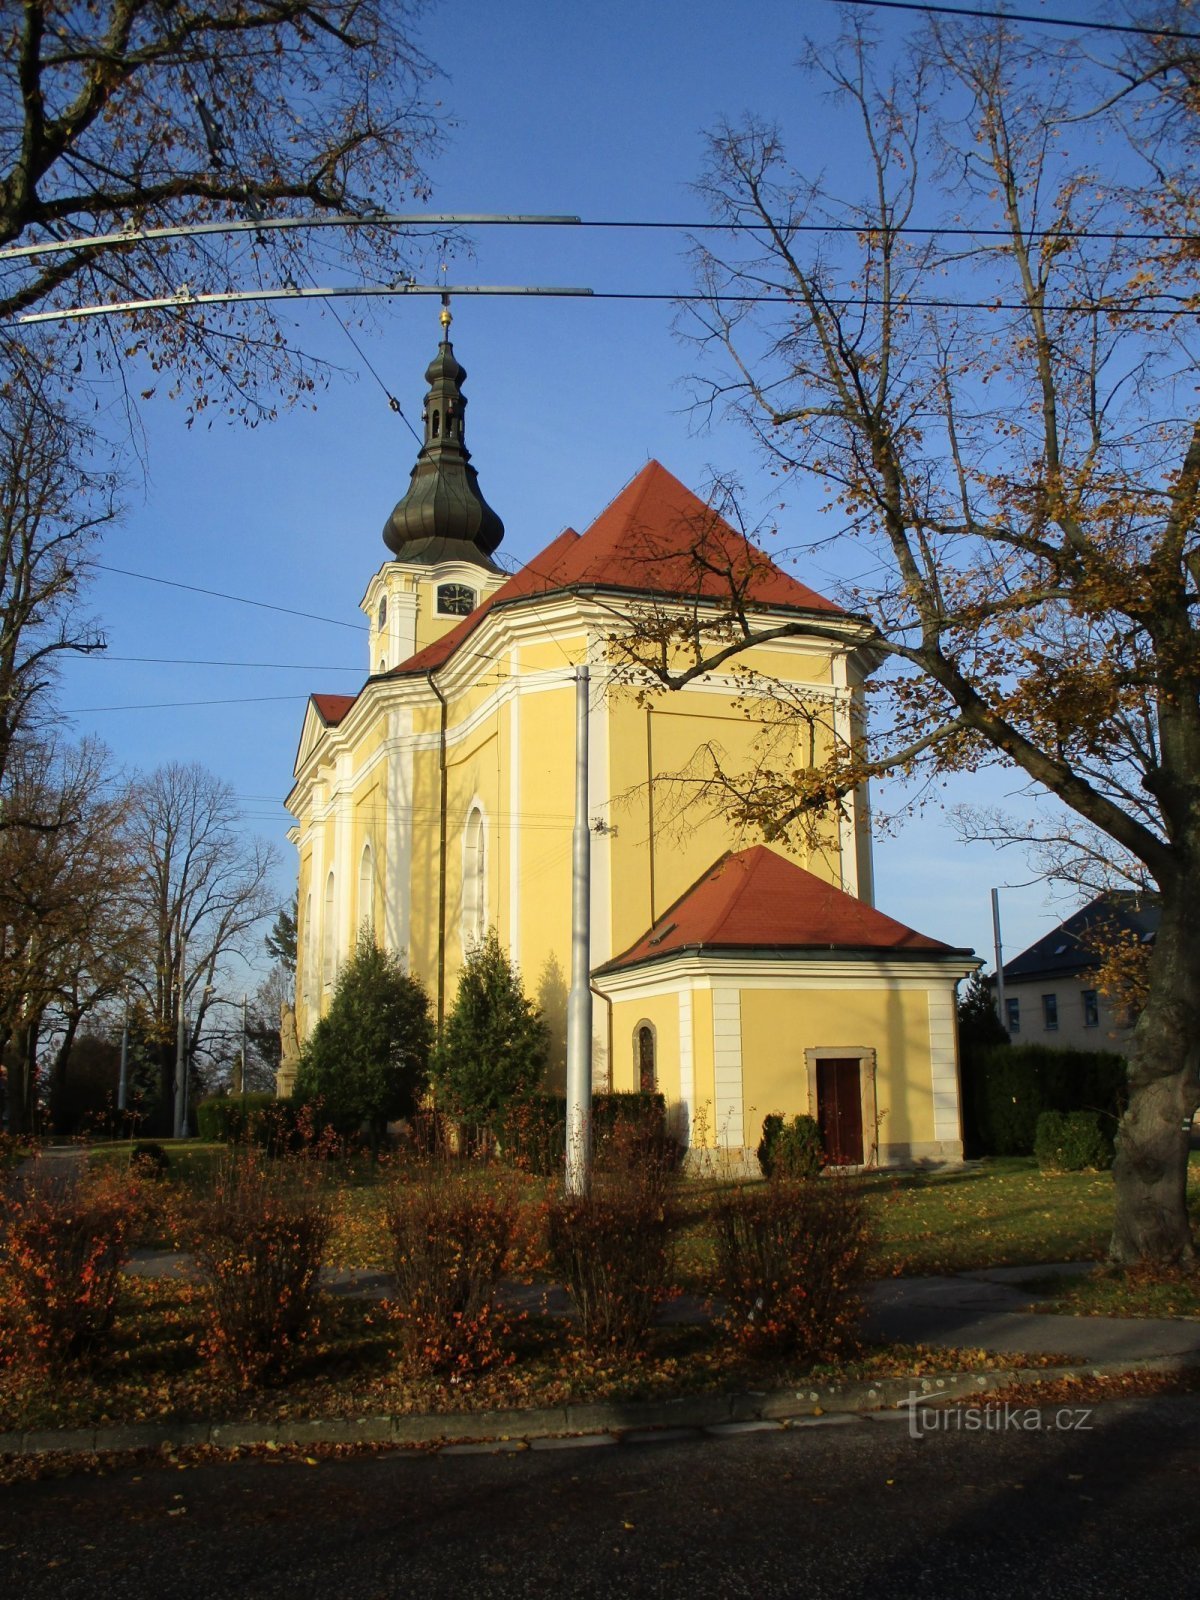 Biserica Sf. Antonína, starețul Nové Hradec Králové (Hradec Králové, 17.11.2019)